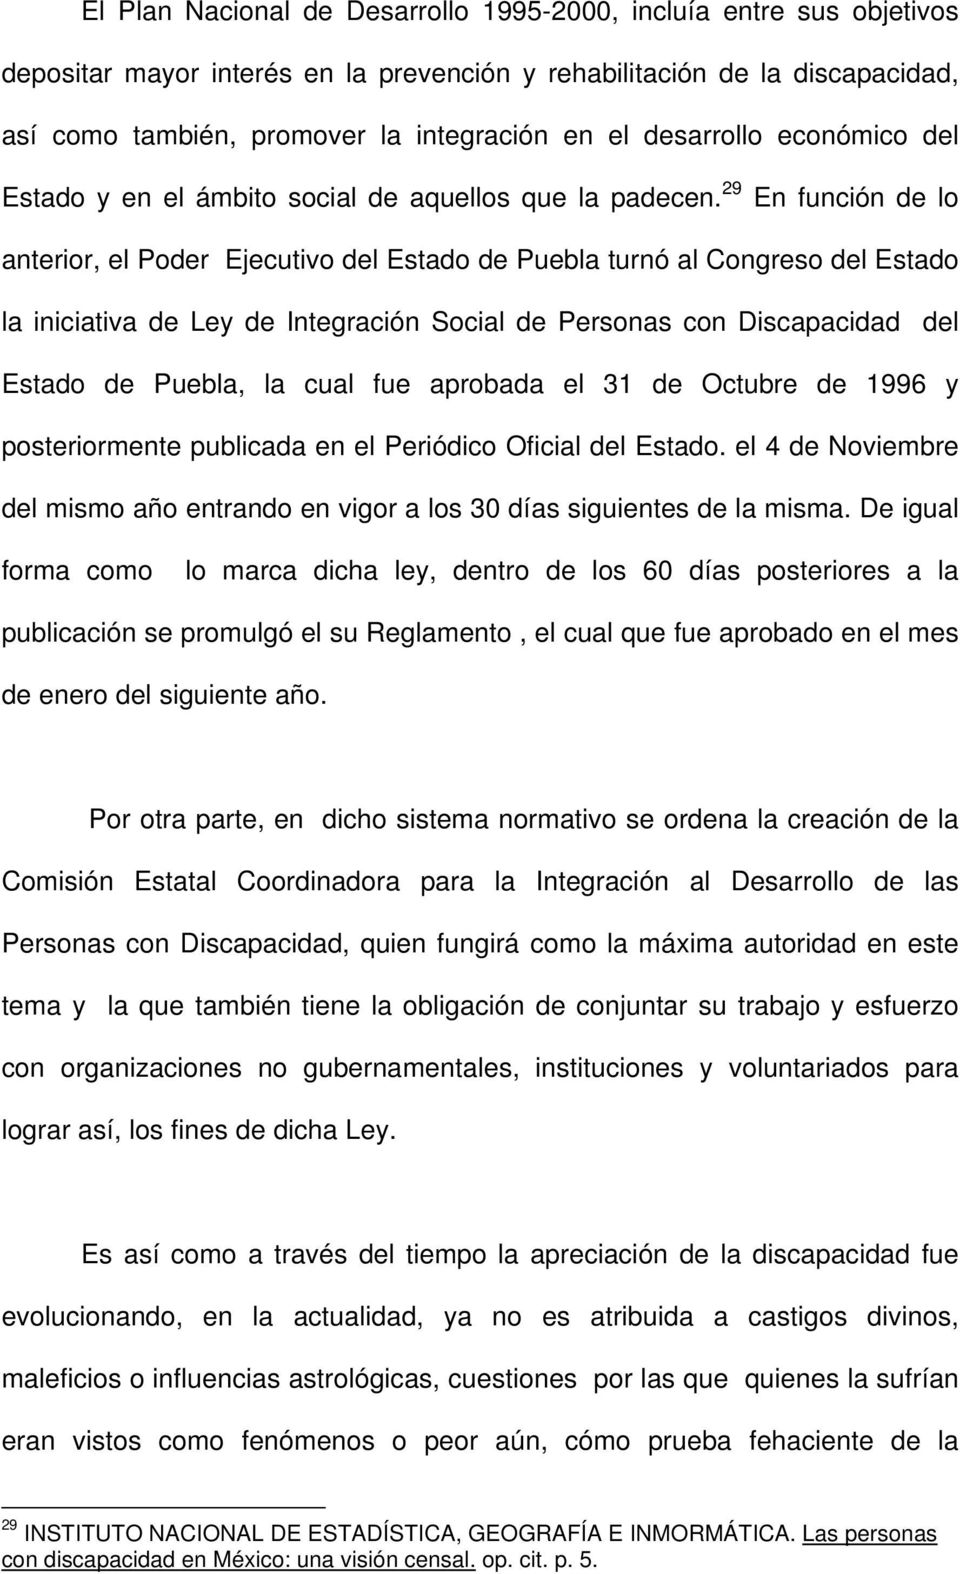 29 En función de lo anterior, el Poder Ejecutivo del Estado de Puebla turnó al Congreso del Estado la iniciativa de Ley de Integración Social de Personas con Discapacidad del Estado de Puebla, la